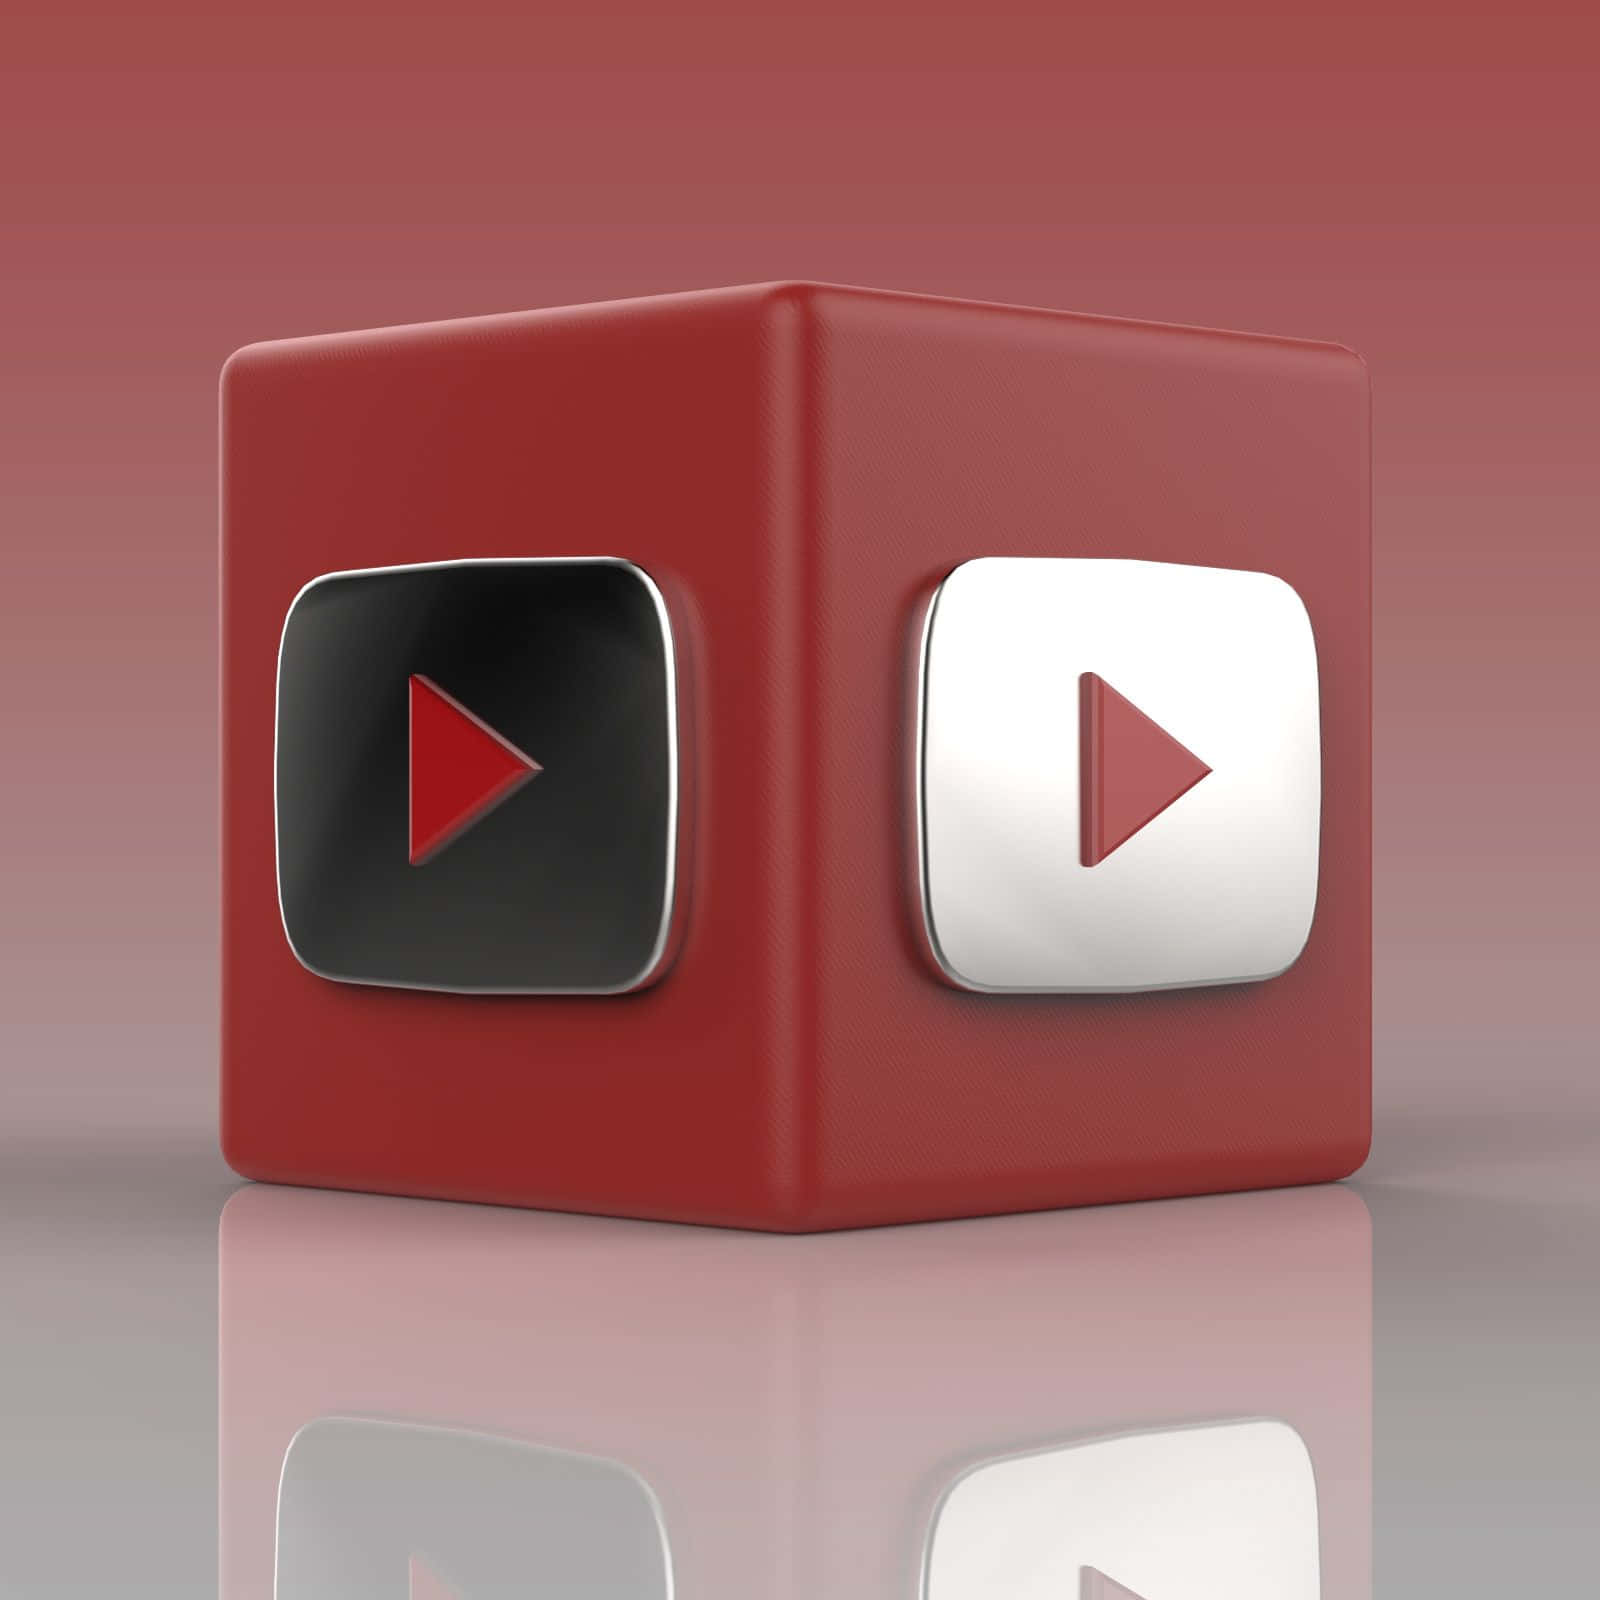 Logotipode Youtube En Un Cubo Rojo